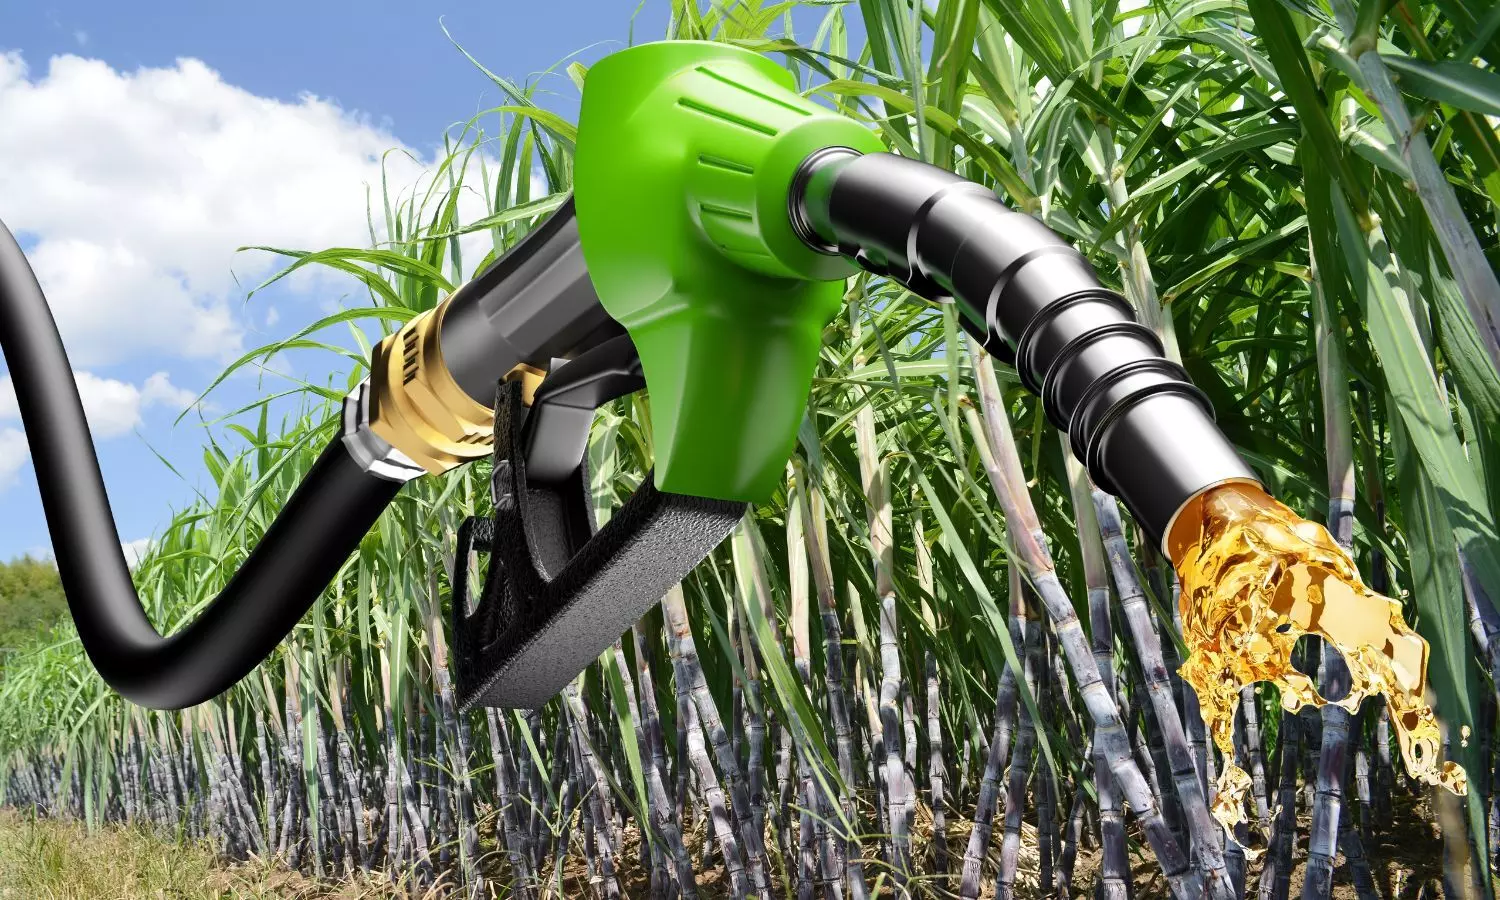 Petrol nozzle, Sugarcanes